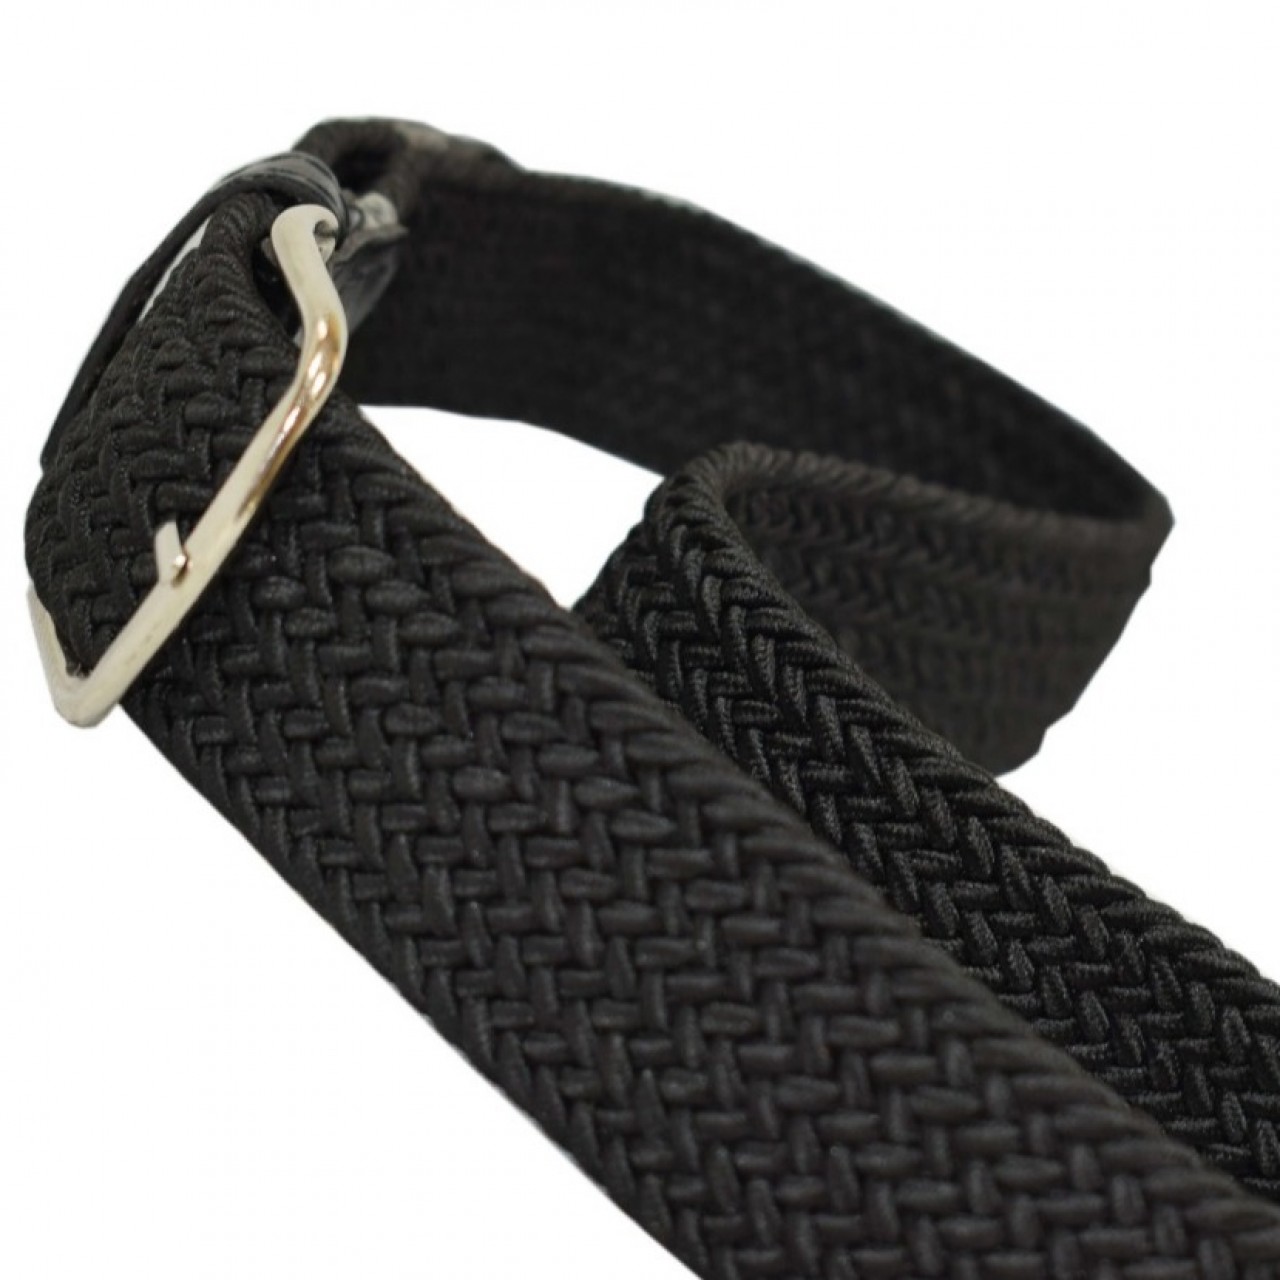 Black Canvas Belt Stretchable Unisex Free Size Strong Stylish